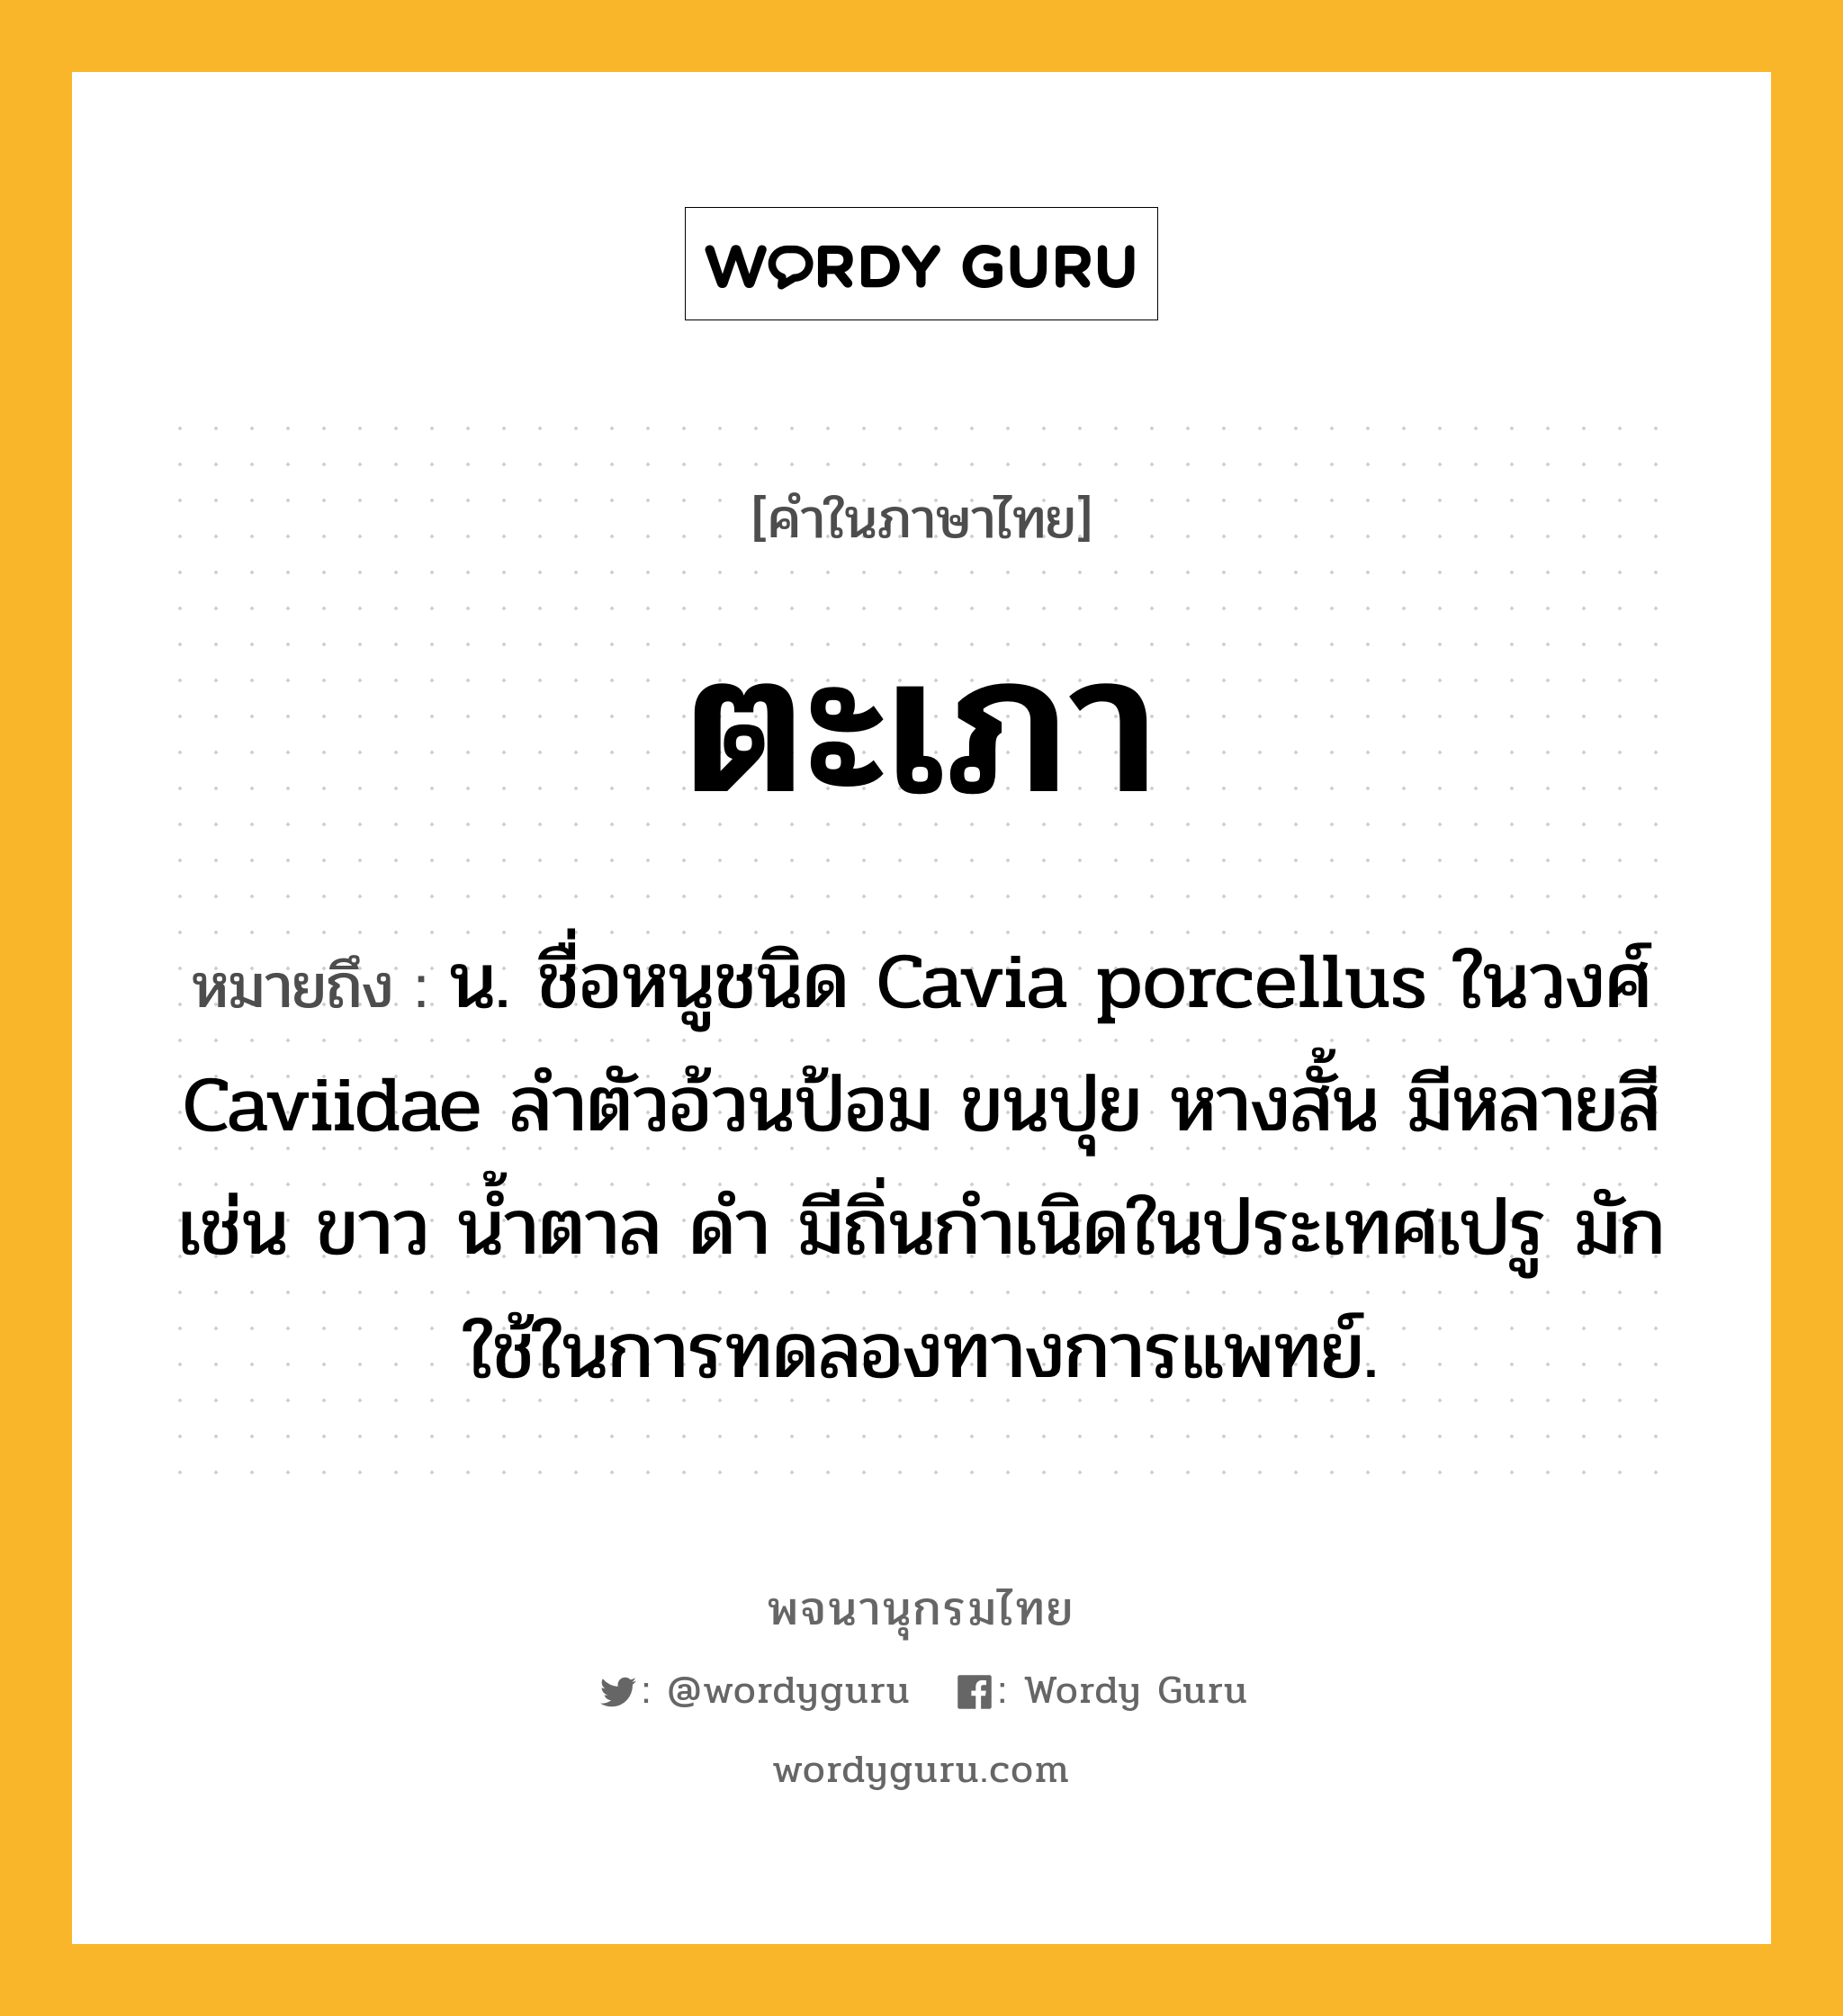 ตะเภา ความหมาย หมายถึงอะไร?, คำในภาษาไทย ตะเภา หมายถึง น. ชื่อหนูชนิด Cavia porcellus ในวงศ์ Caviidae ลำตัวอ้วนป้อม ขนปุย หางสั้น มีหลายสี เช่น ขาว นํ้าตาล ดํา มีถิ่นกําเนิดในประเทศเปรู มักใช้ในการทดลองทางการแพทย์.